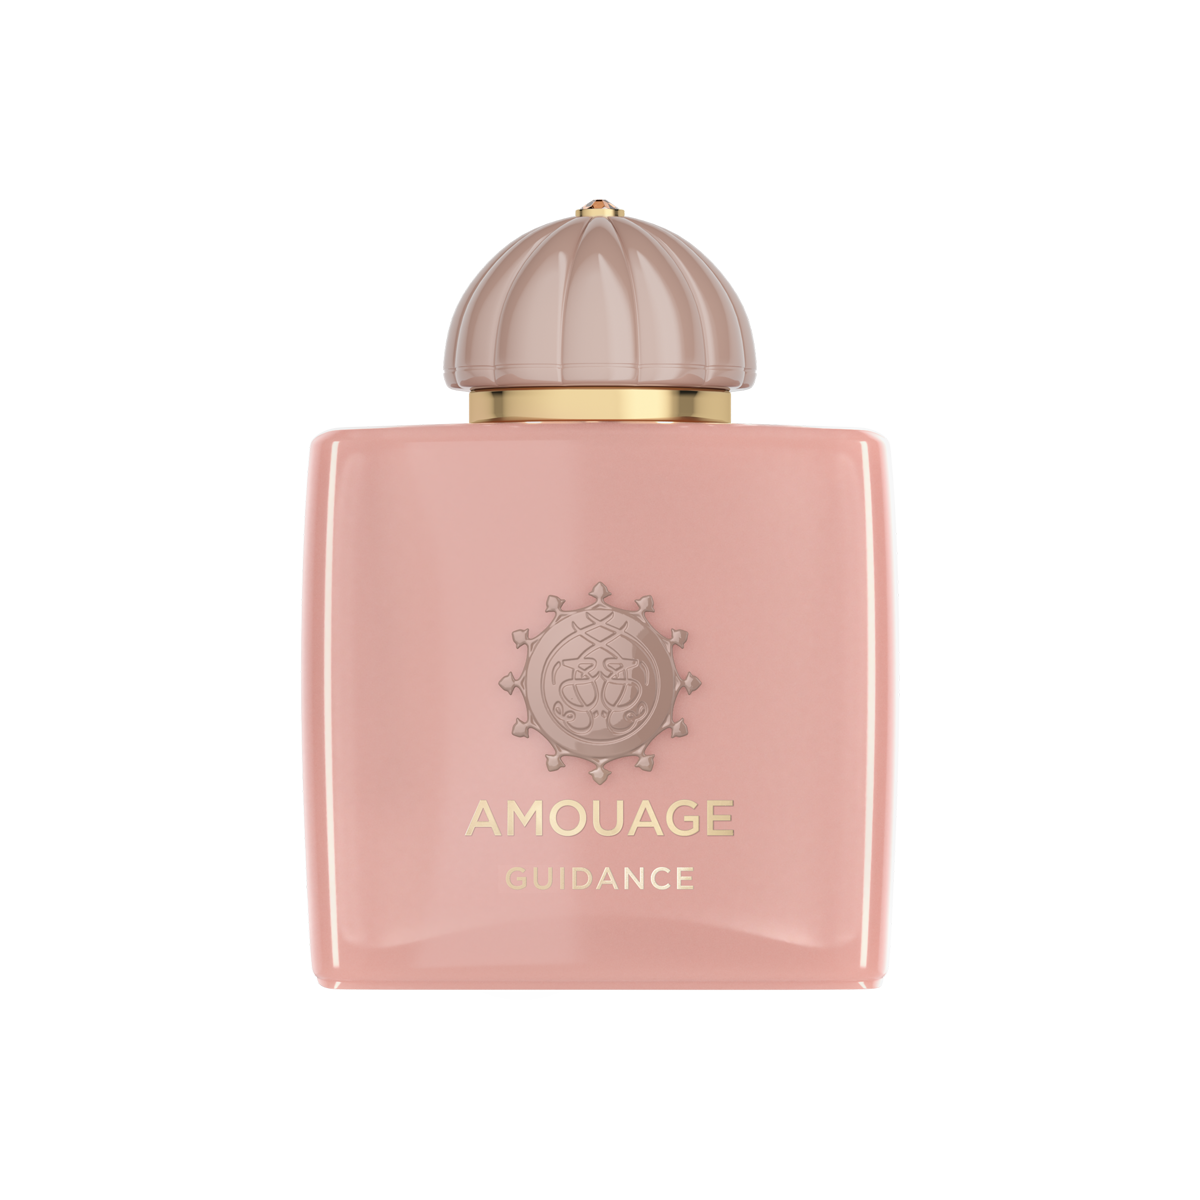 Amouage - Guidance Woman Eau de Parfum